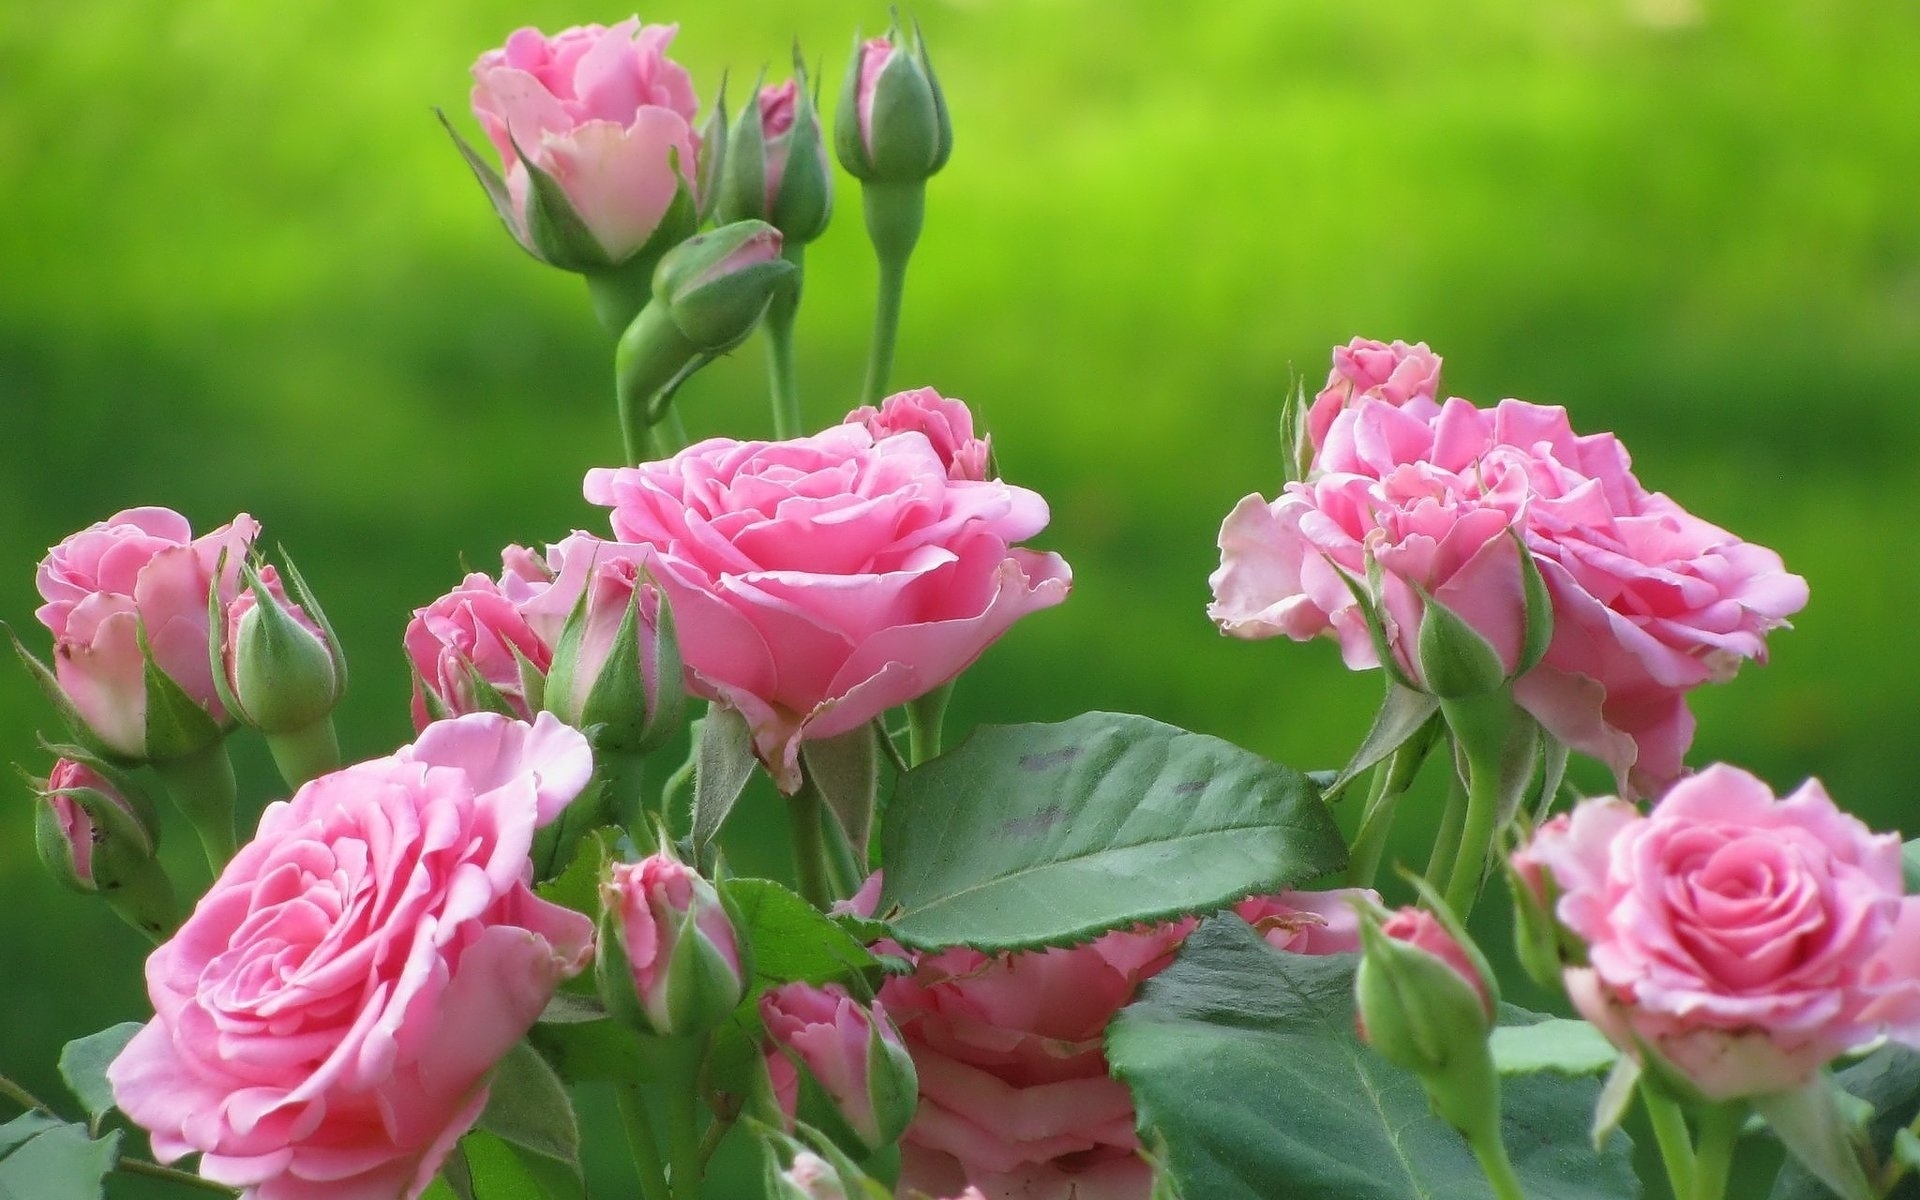 38393 Salvapantallas y fondos de pantalla Plantas en tu teléfono. Descarga imágenes de verde, roses, flores gratis